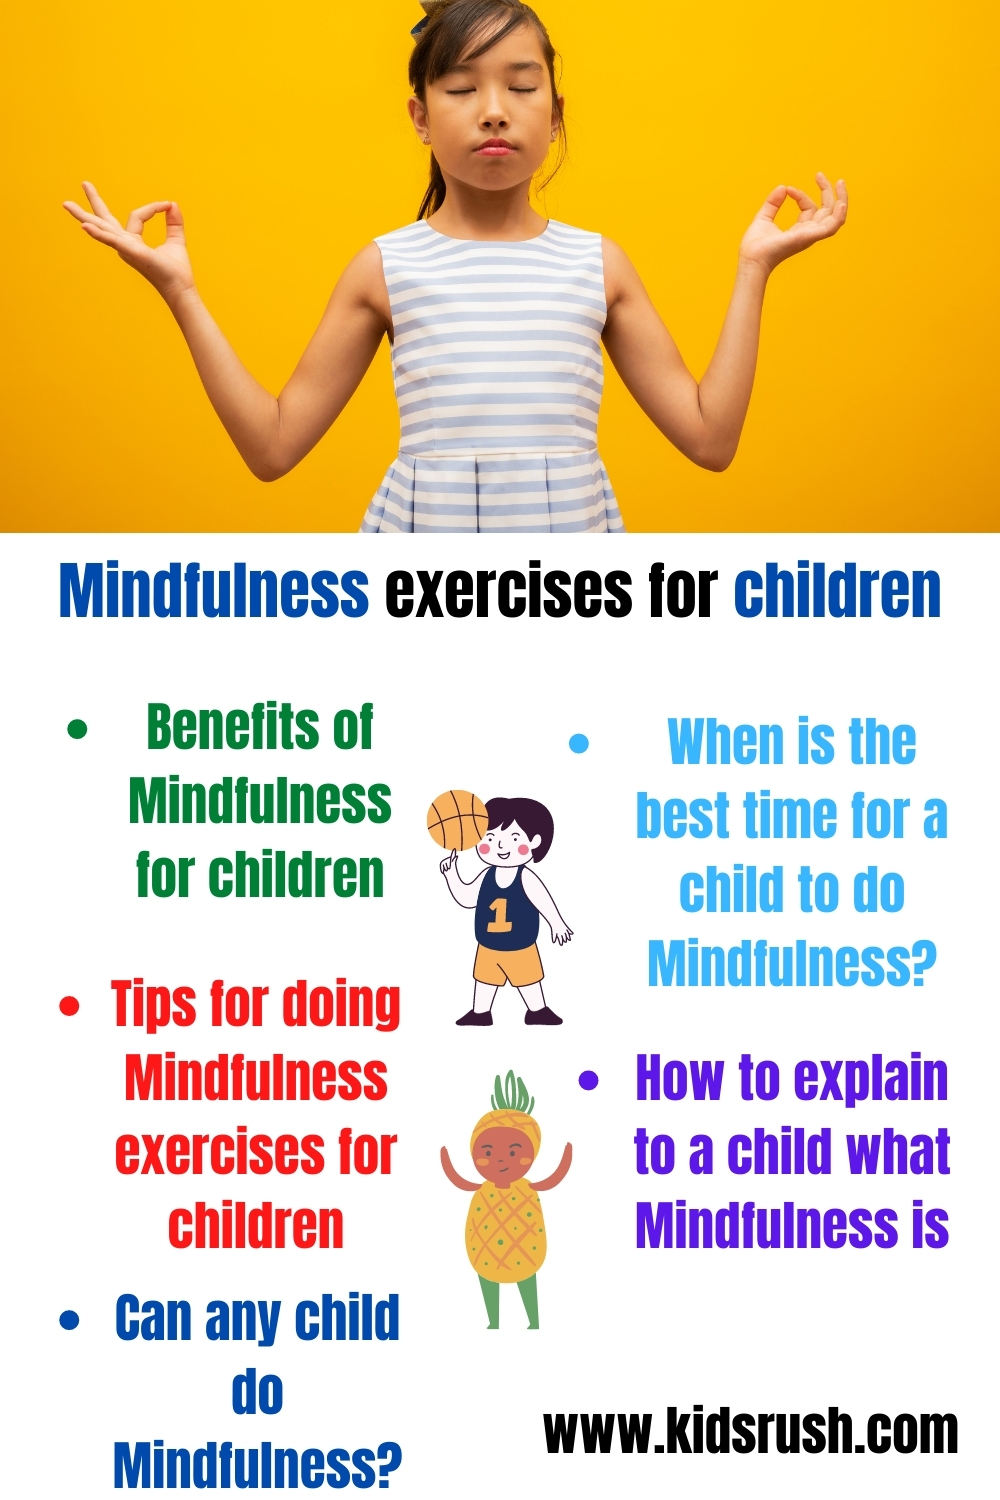 Mindfulness exercises for children